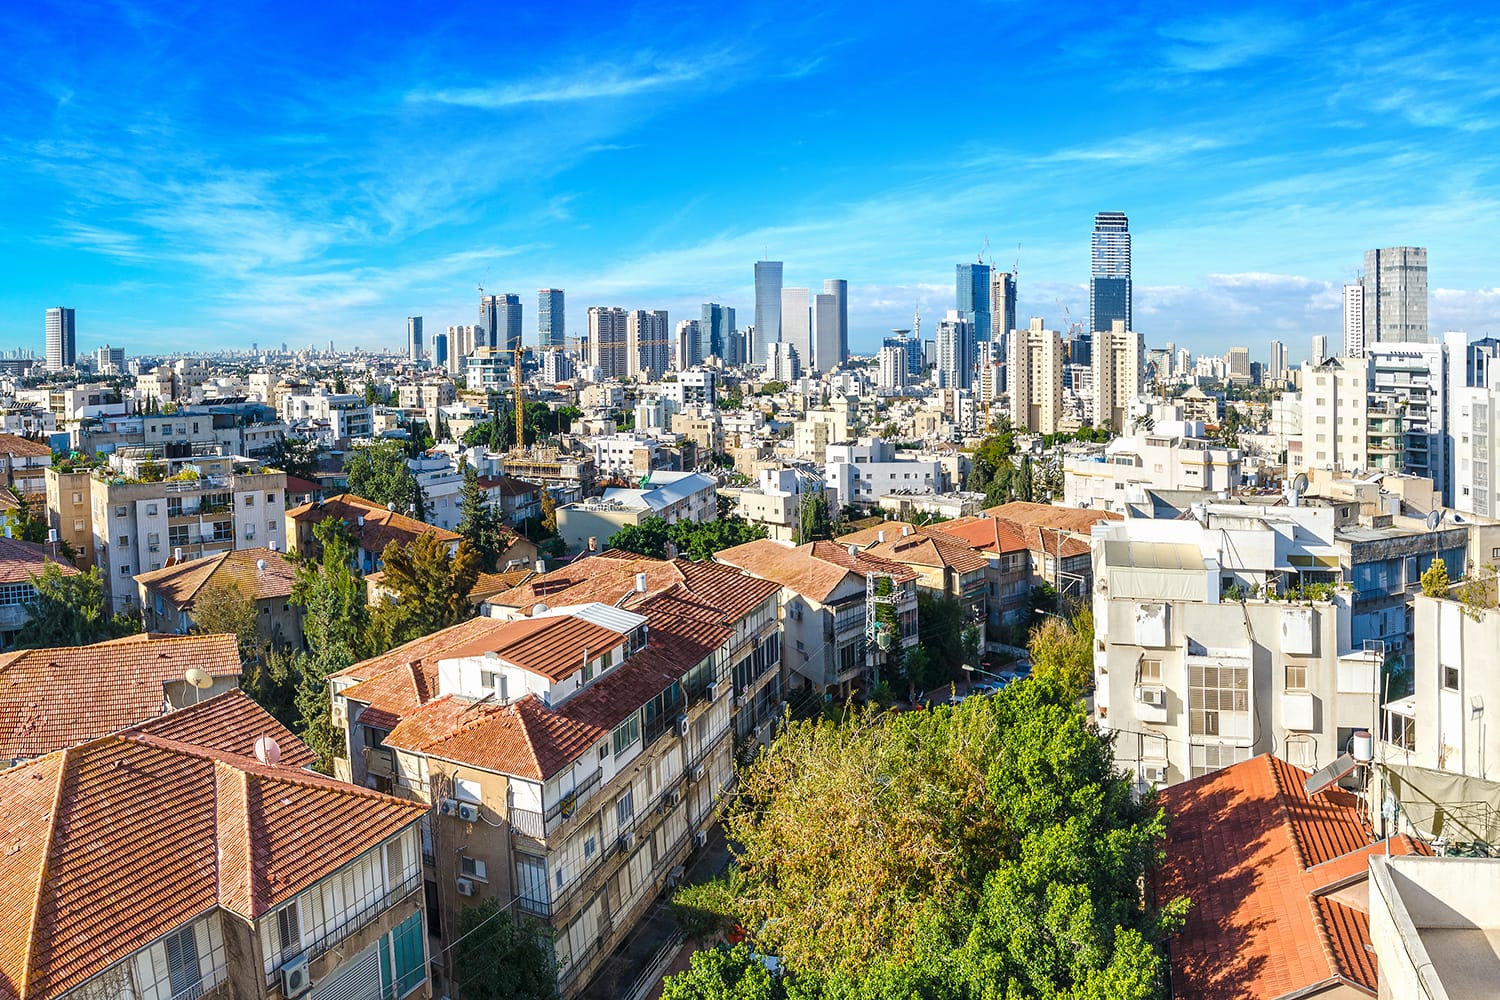 Rooftop view over Tel Aviv, Israel